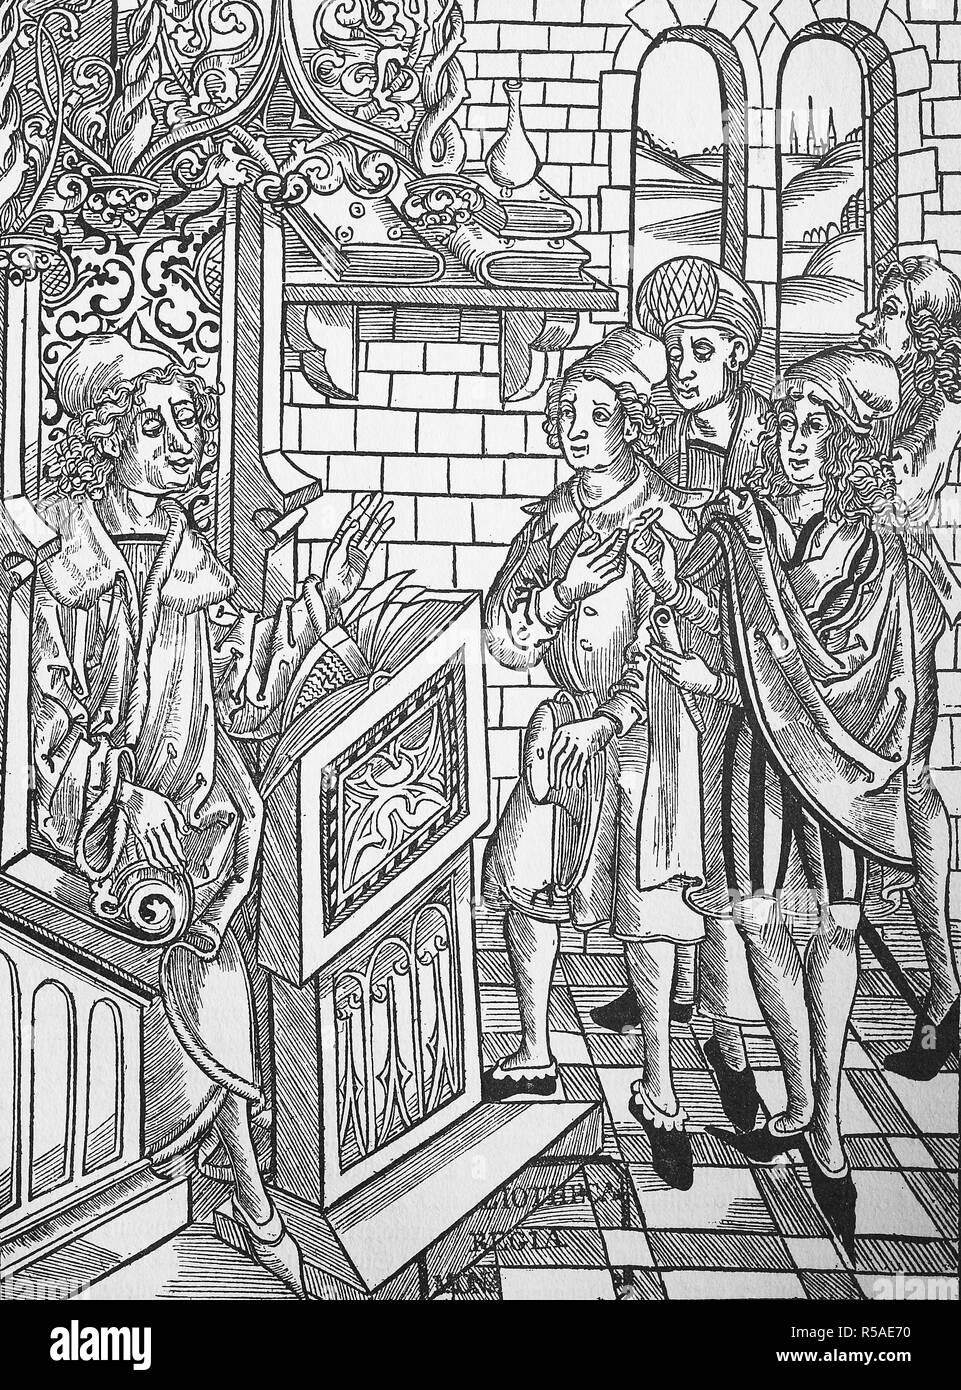 Les professeurs d'université et les étudiants de différents costumes, de Brunschwig, Chirurgia, 1497, gravure sur bois, Italie Banque D'Images